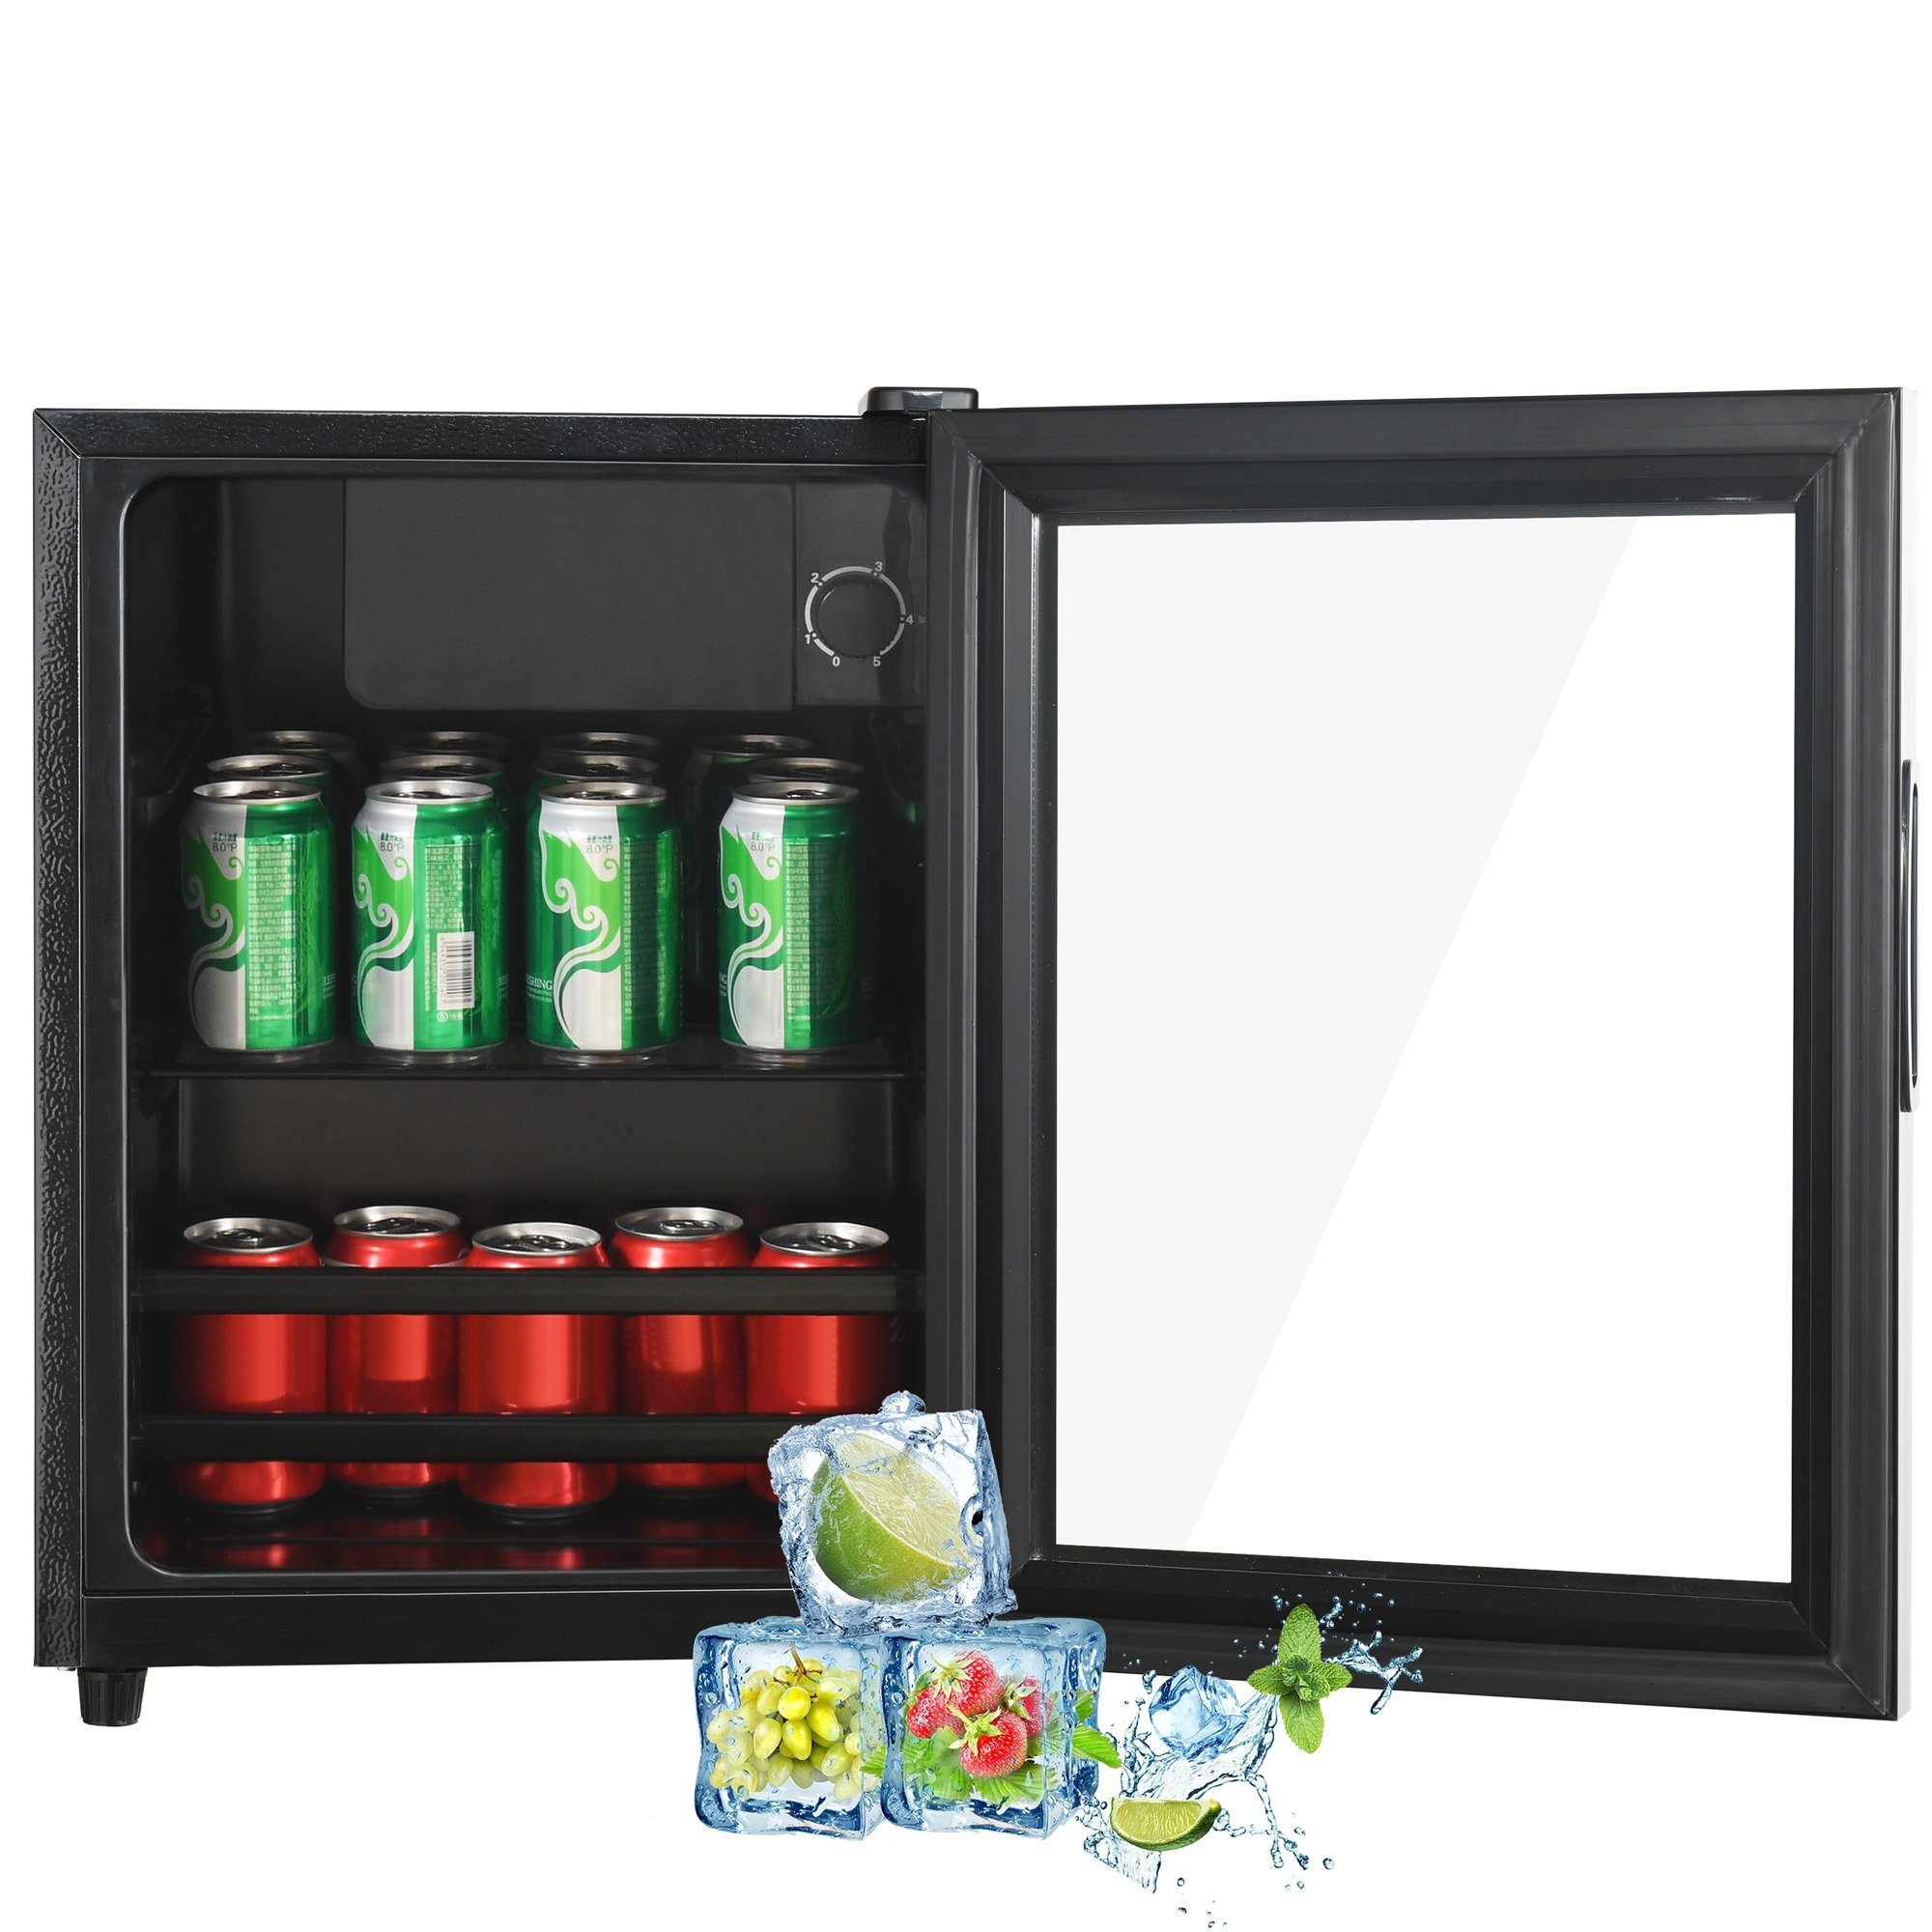 Merax Table Top Kühlschrank 55L mit Gefrierfach, Glastür, LED-Beleuchtung, Getränkekühlschrank SC-55P, 55 cm hoch, 40 cm breit, Mini Kühlschrank, Kühl- und Gefrierfunktion, freistehend